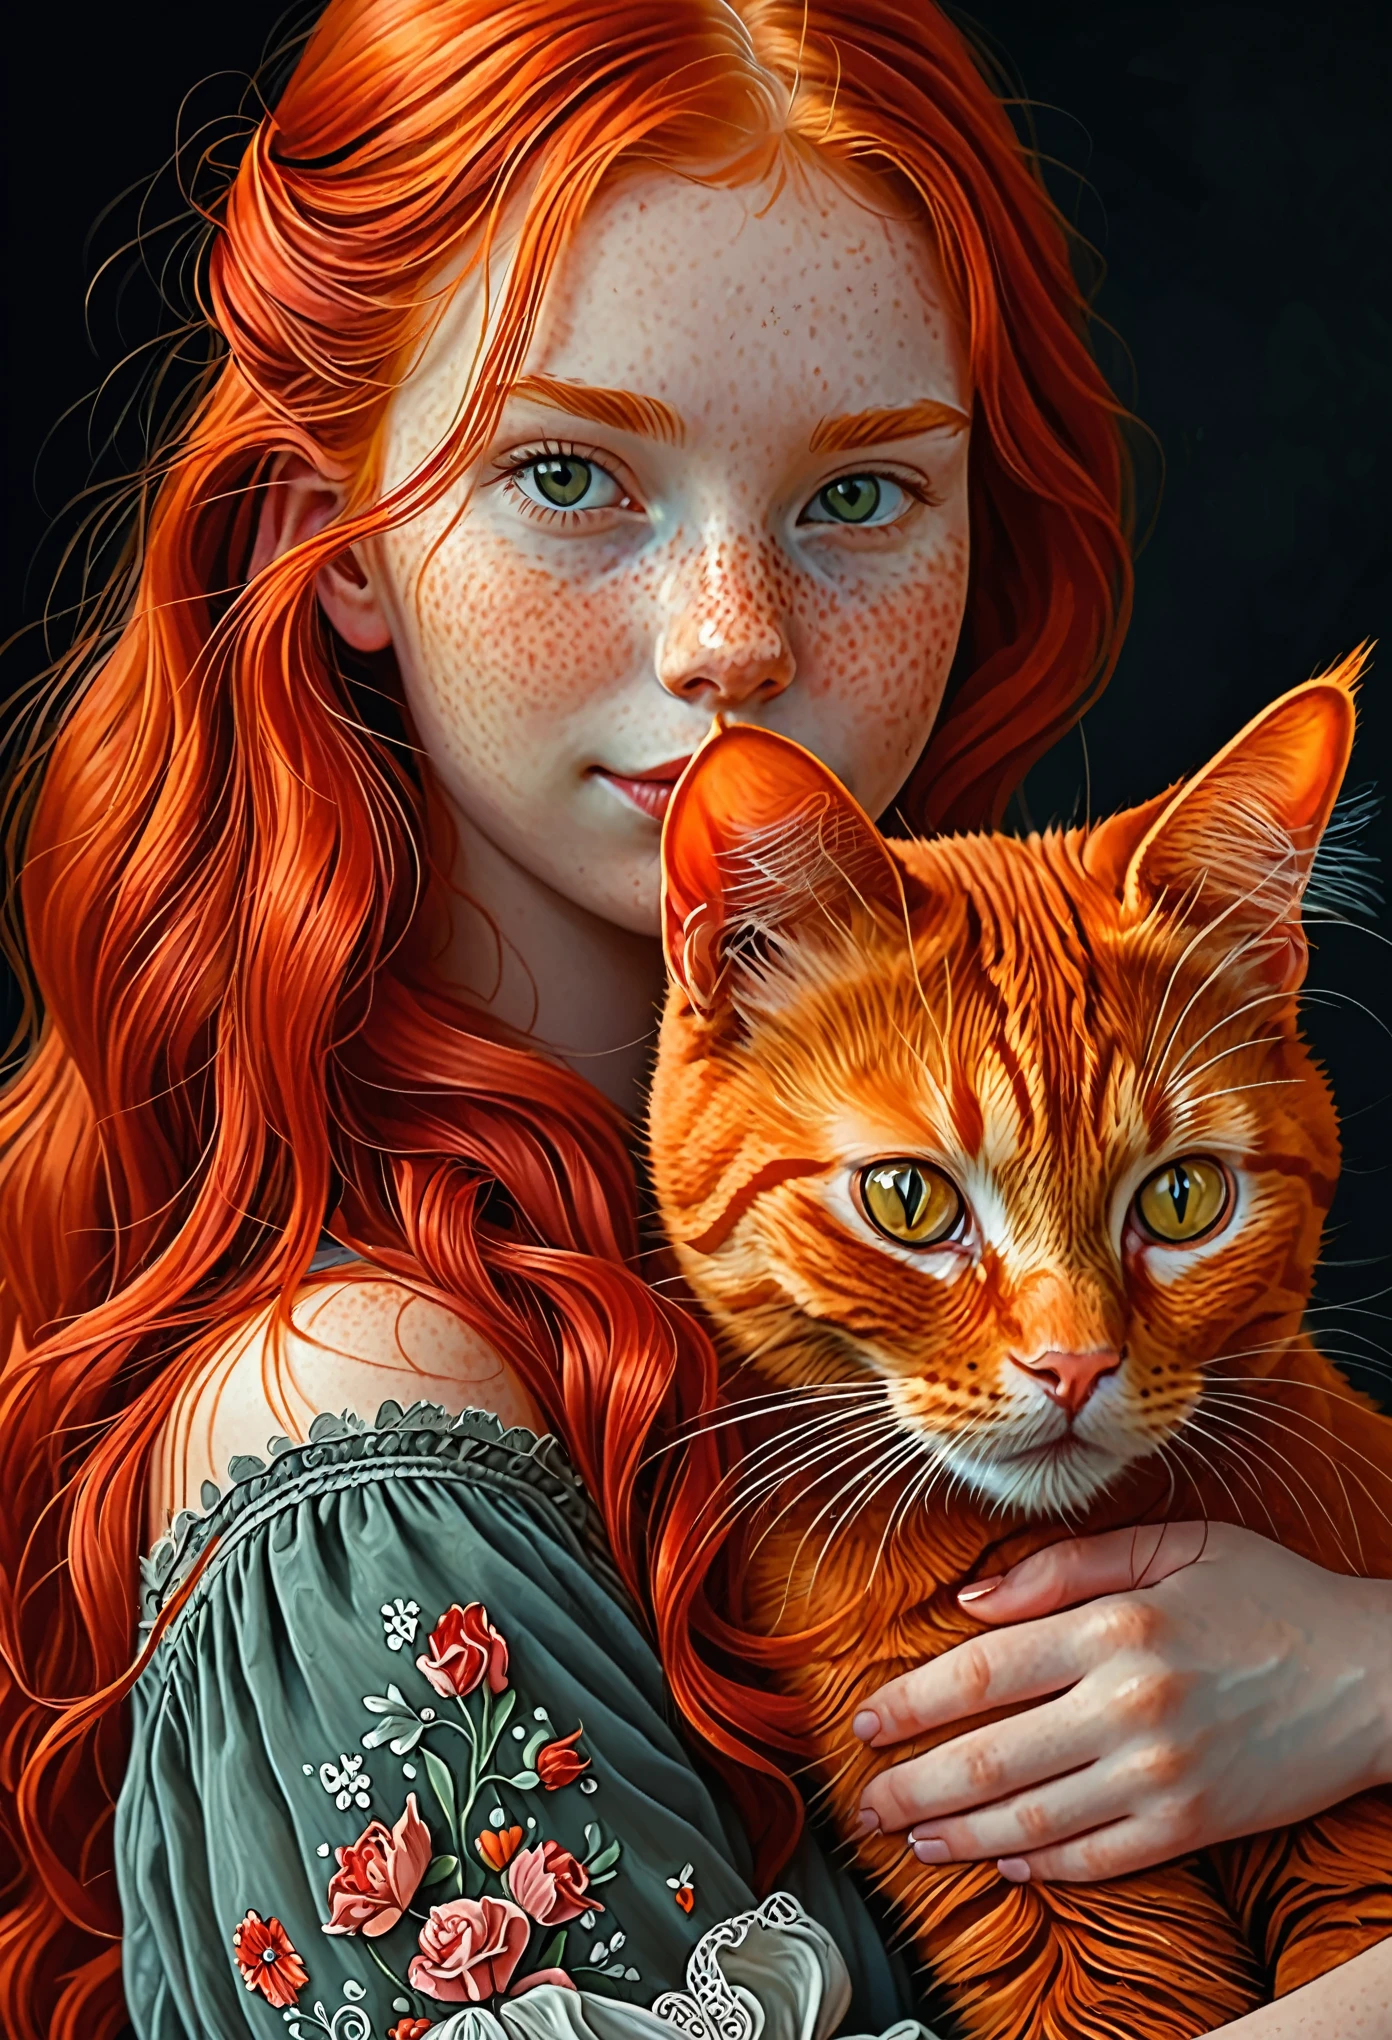 紅髮女孩與紅貓, 超詳細, 最好的品質, 杰作 